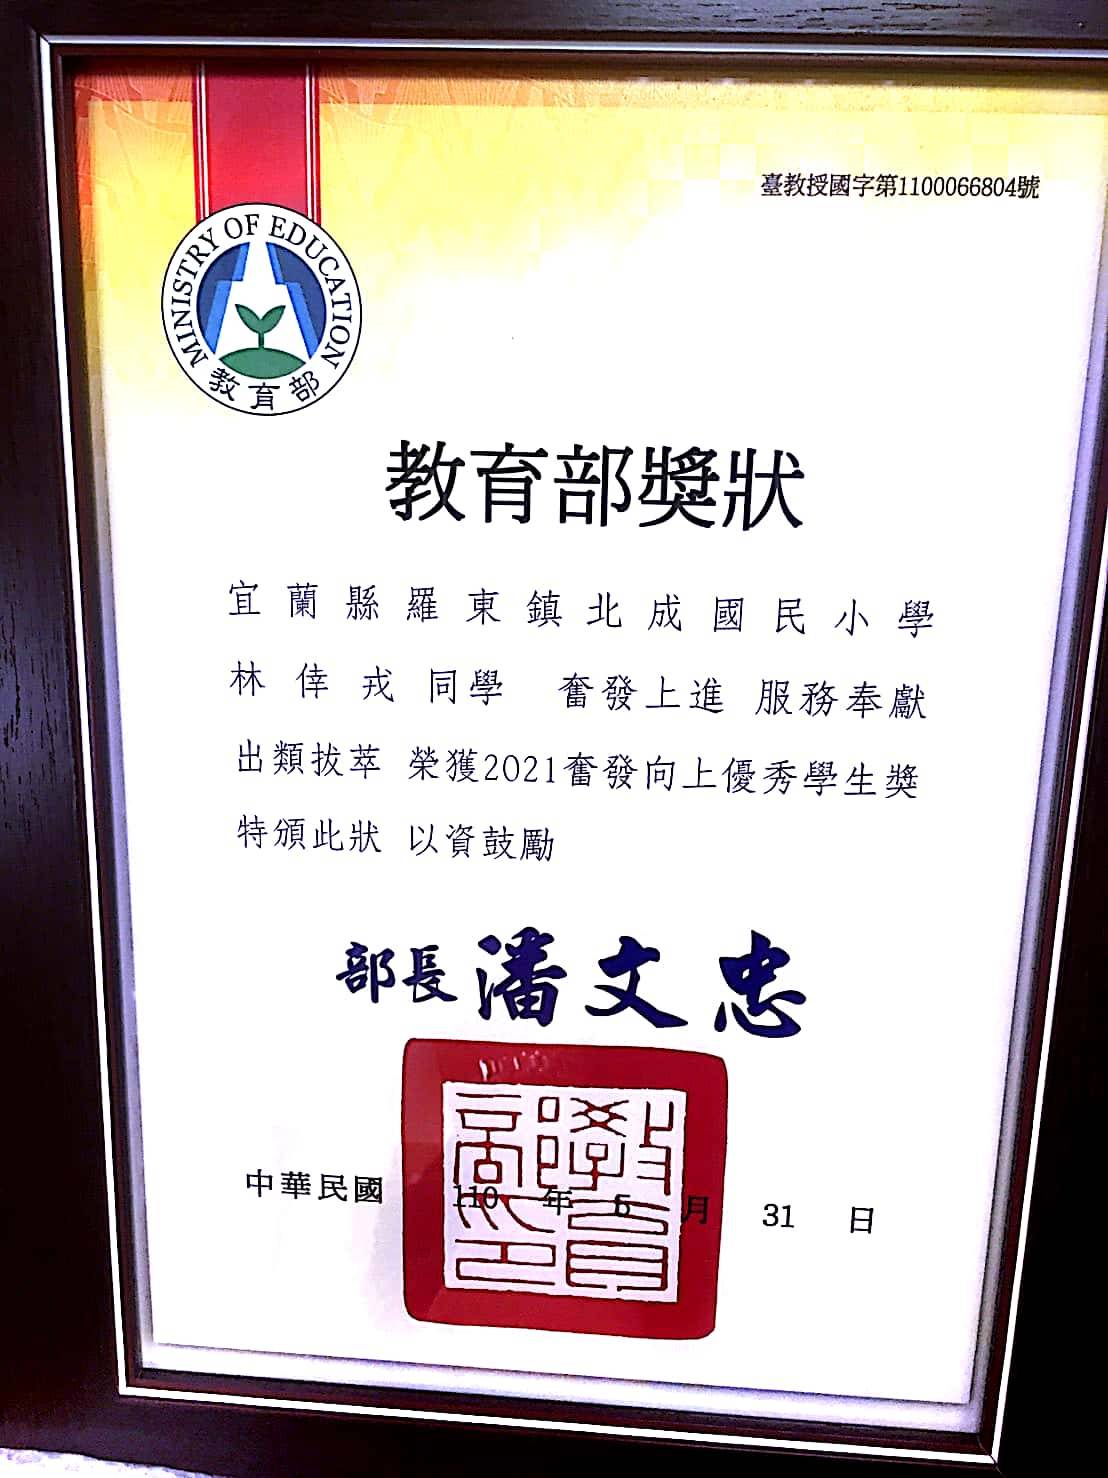 Rong Mei mendapatkan Penghargaan Pendidikan Presiden 2021. Sumber: Lin Zi-qing